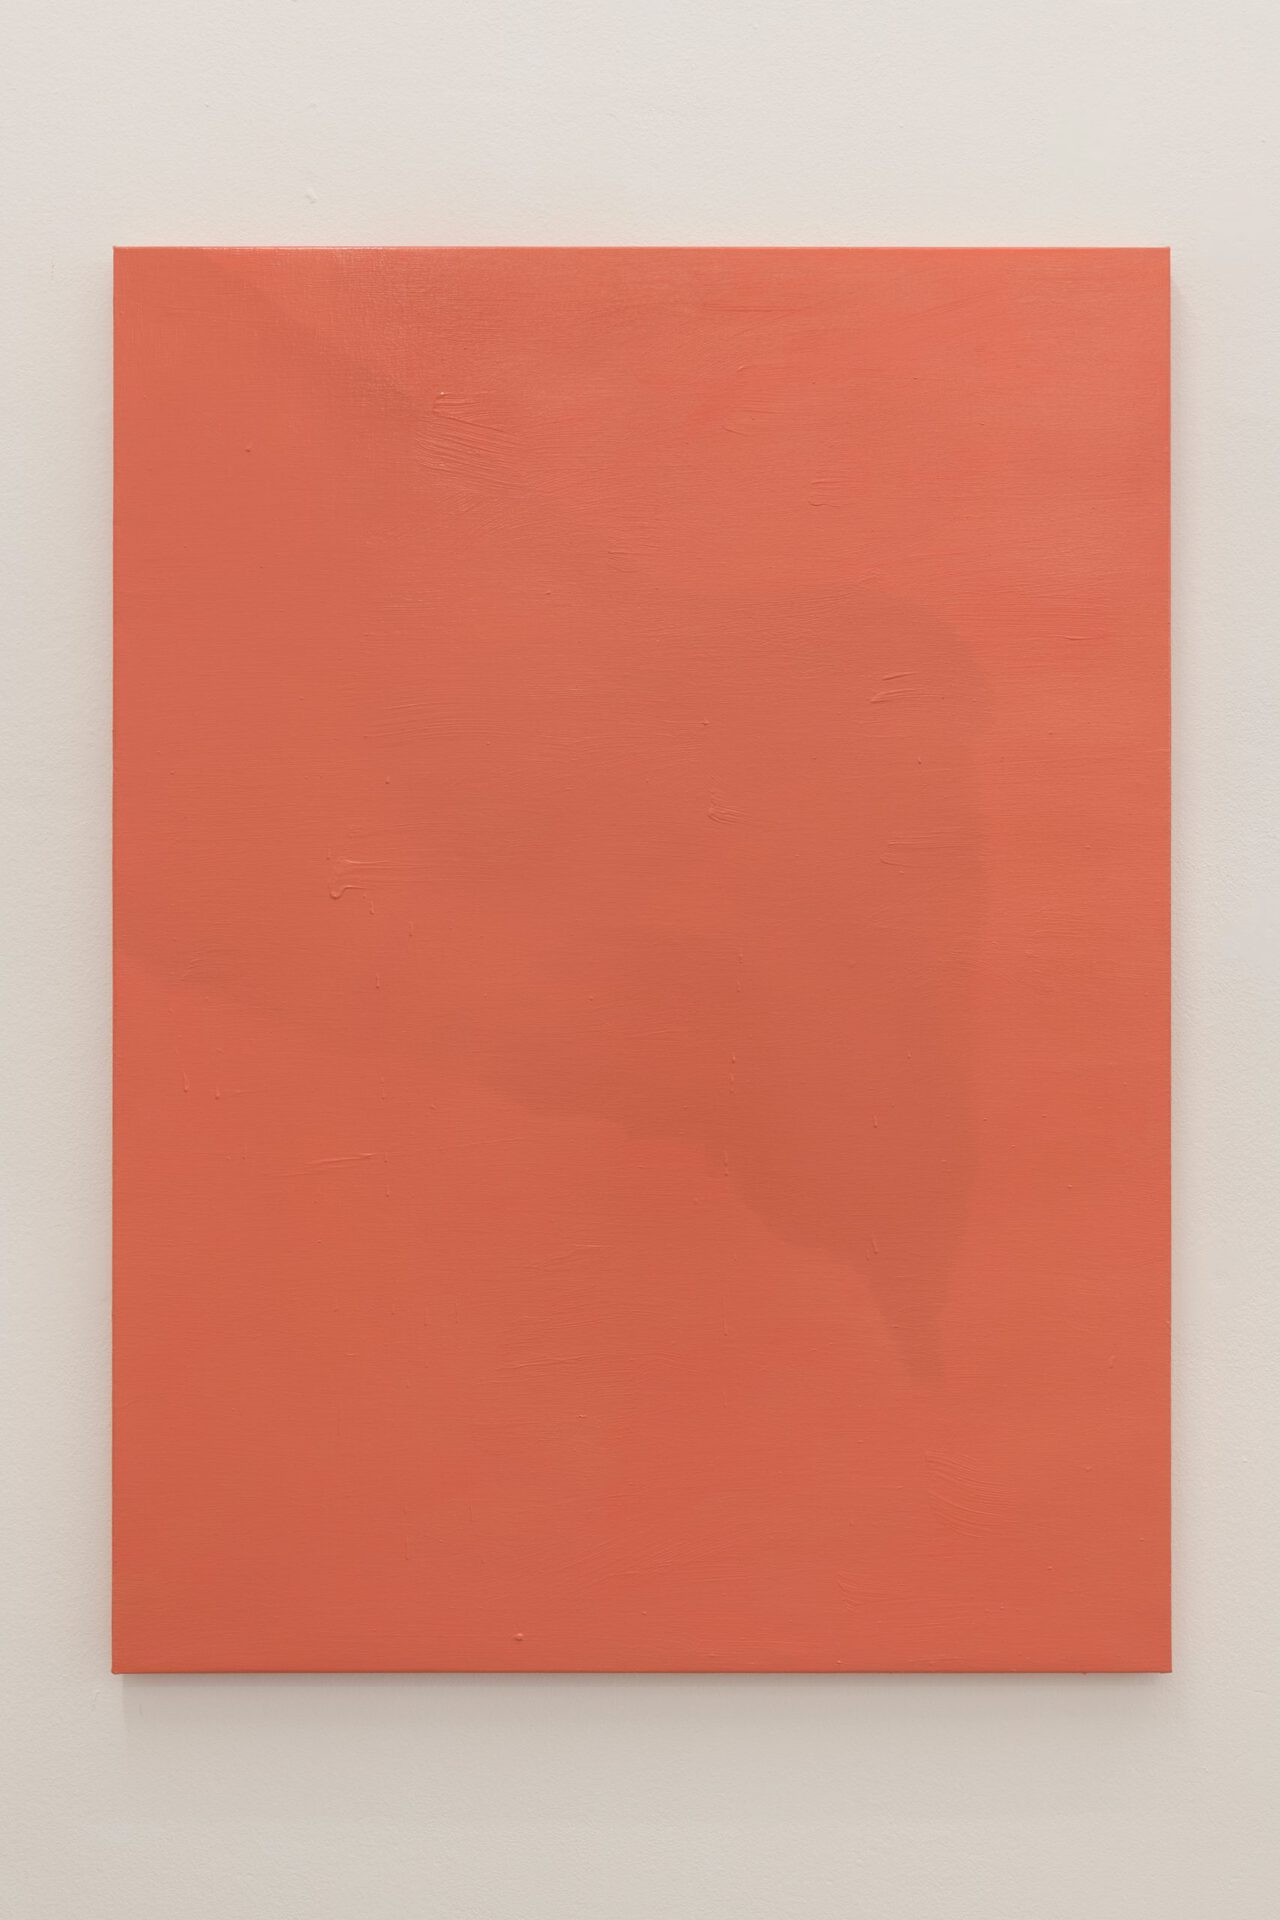 Bernat Daviu, Atelier aux sculptures, 2021, oil on linen, 130x97cm